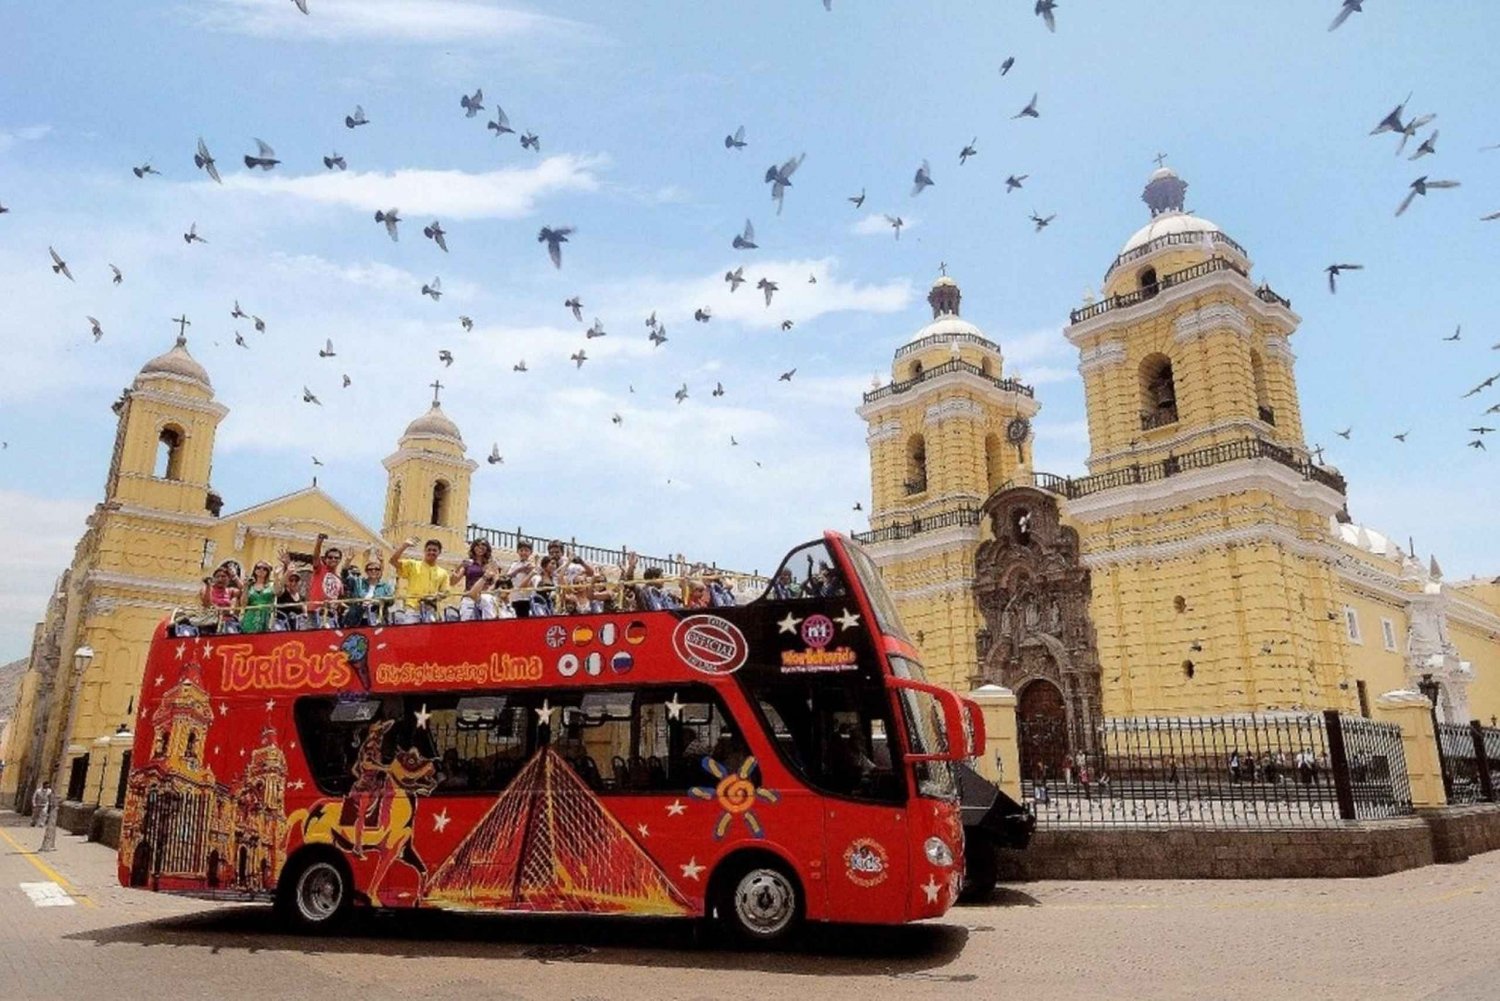 Lima: Panorama Sightseeing Bus-, Wander- und Katakomben-Tour